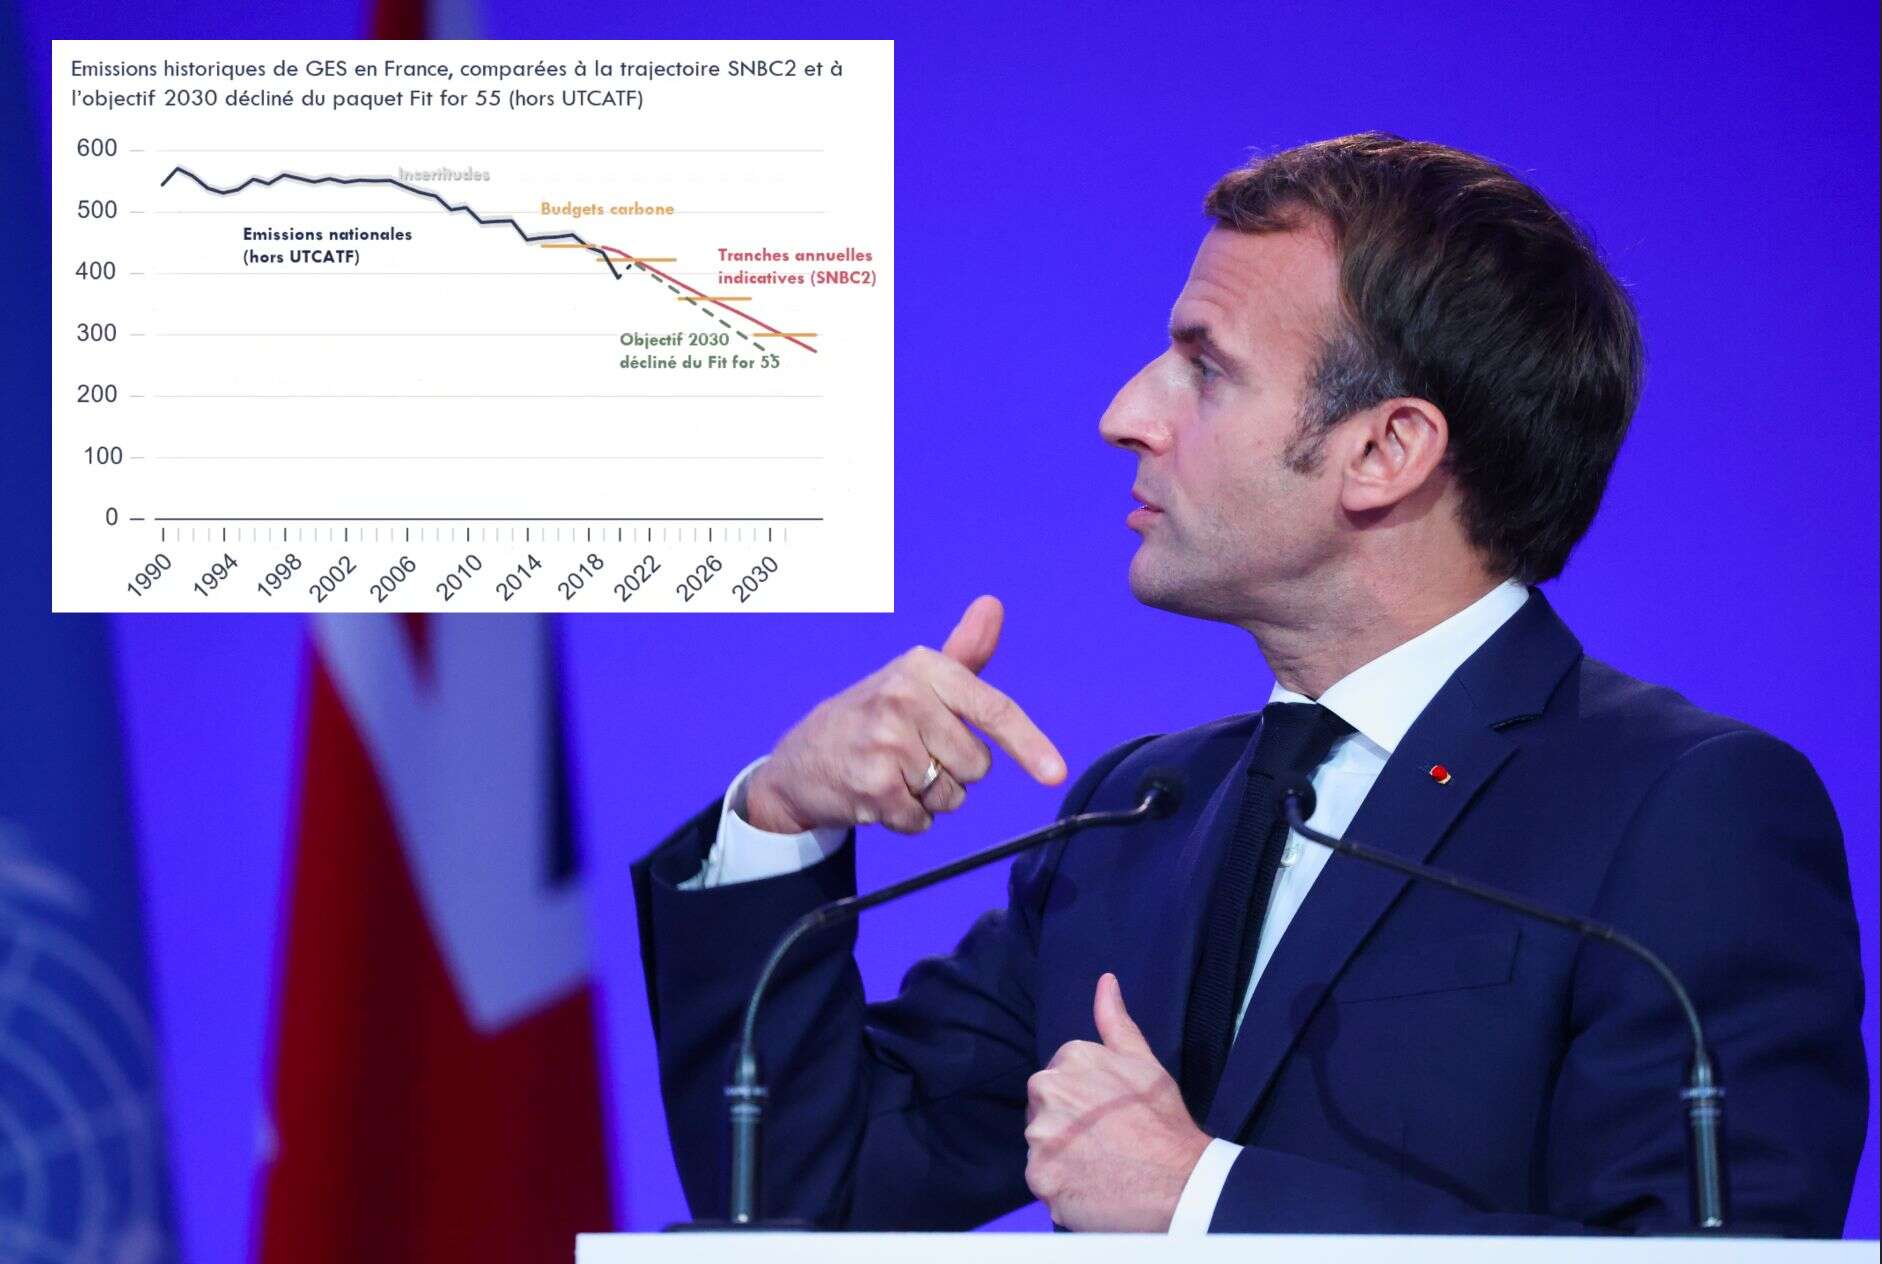 Les émissions de CO2 en France continuent leur tendance à la baisse, mais les politiques climatiques restent insuffisantes.